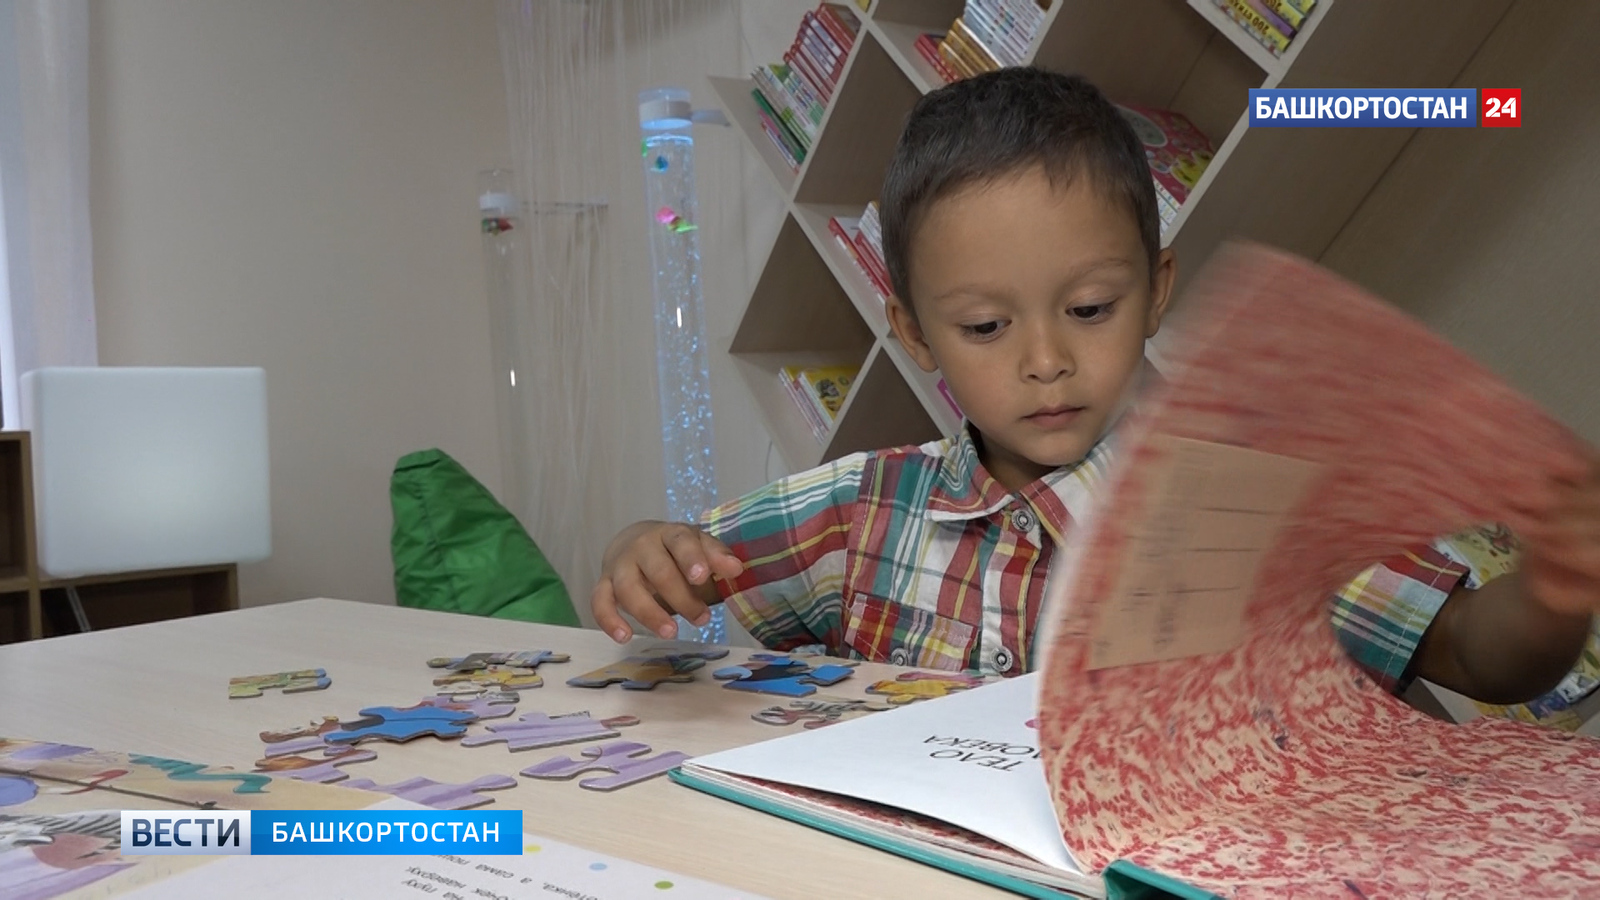 В Наумовской библиотеке нового поколения в Башкирии создан специализированный детский зал